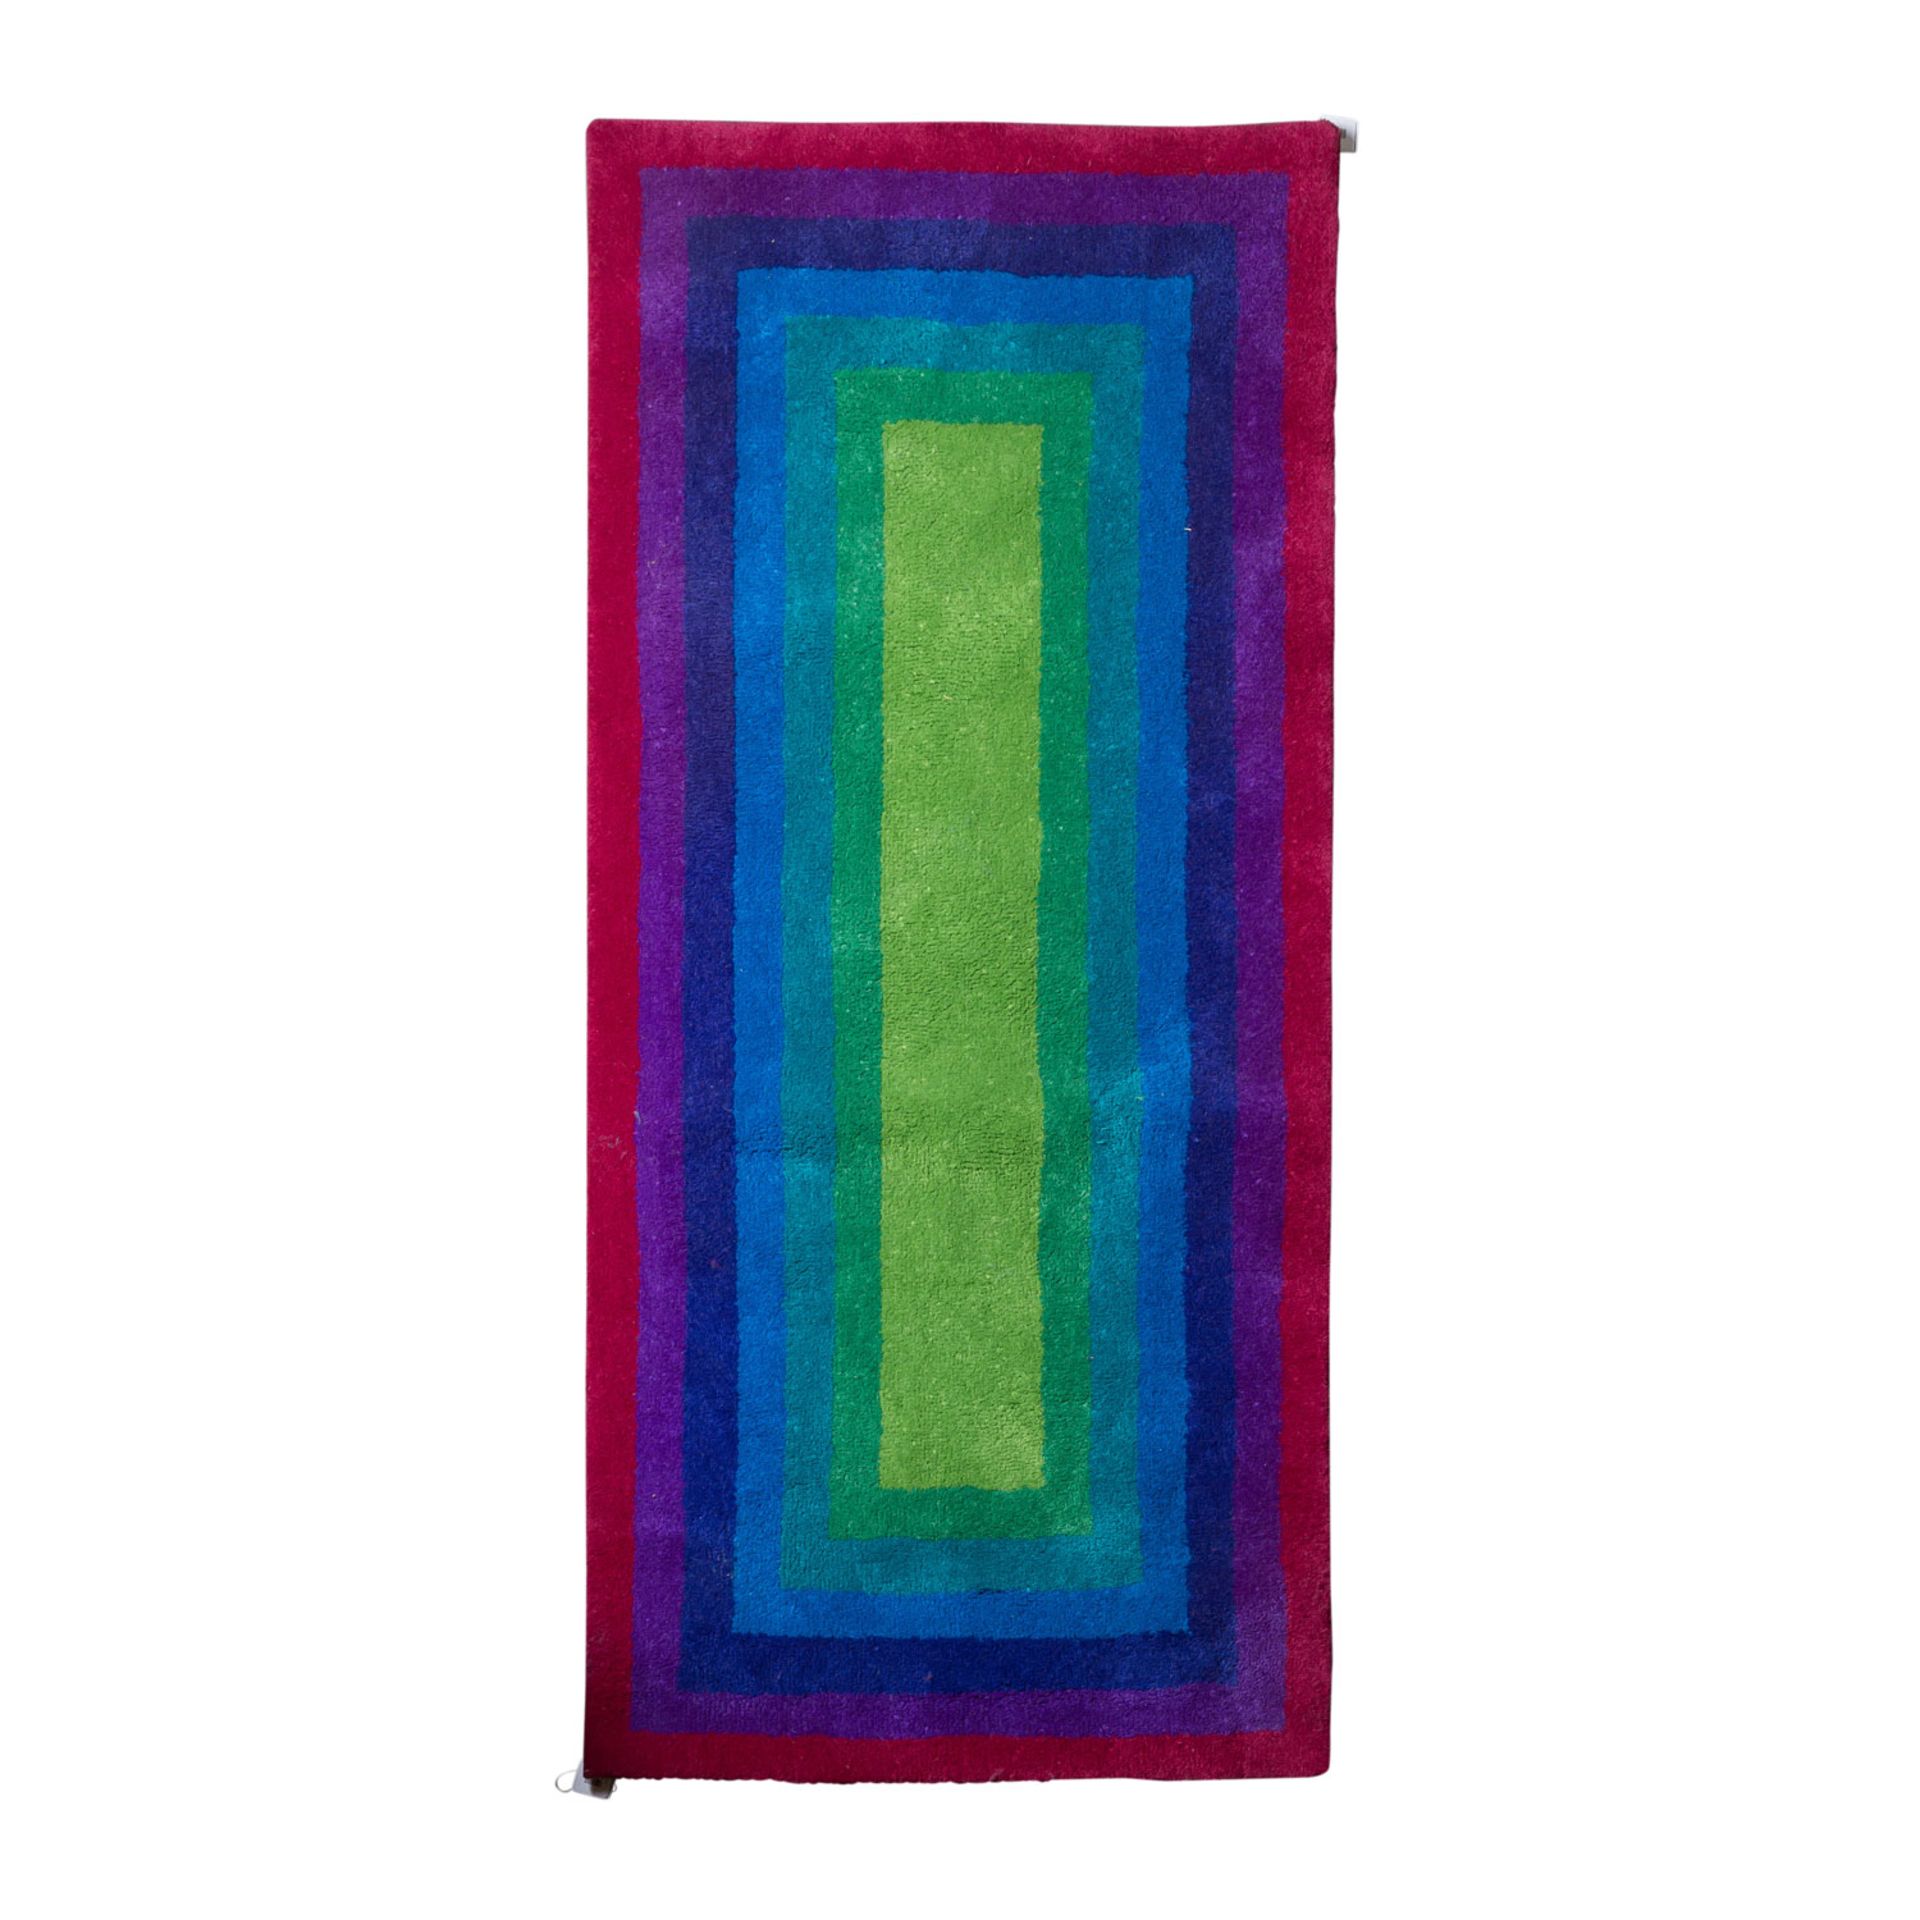 Design Teppich aus Wolle, 1970er Jahre, 198x90 cm.Im Op-Art Stil in den Farben Grün, Blau und